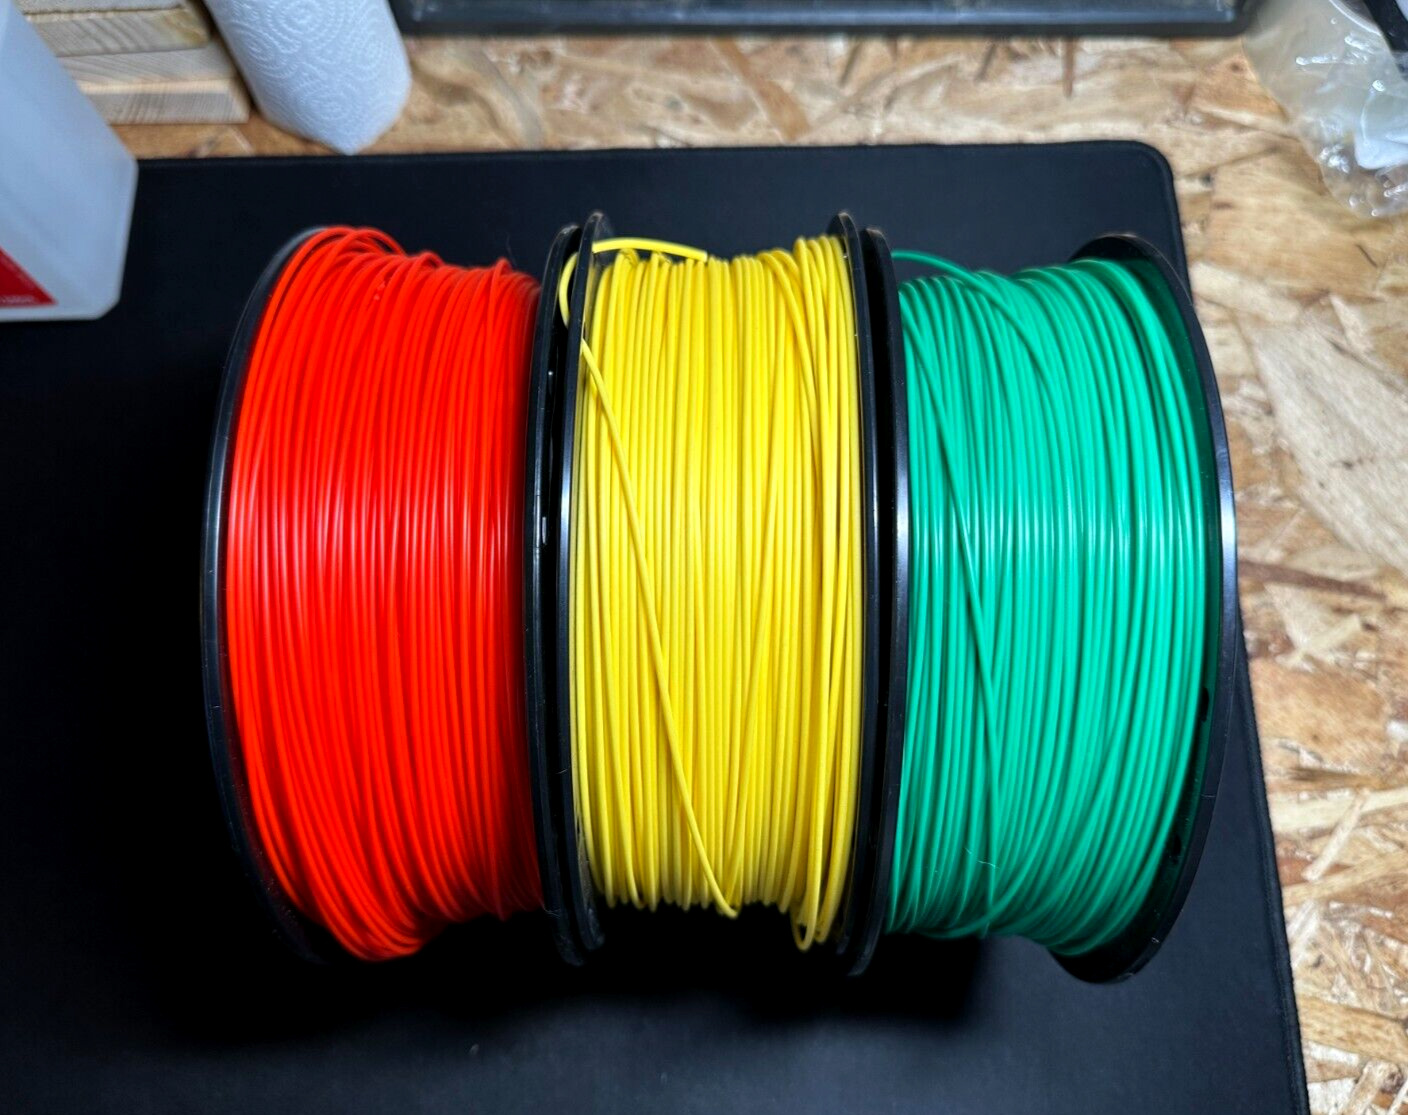 (17x) Bulk Lot of 3D Printer Filament (PETG/PLA/PLA+) - Multiple Colors/Lengths